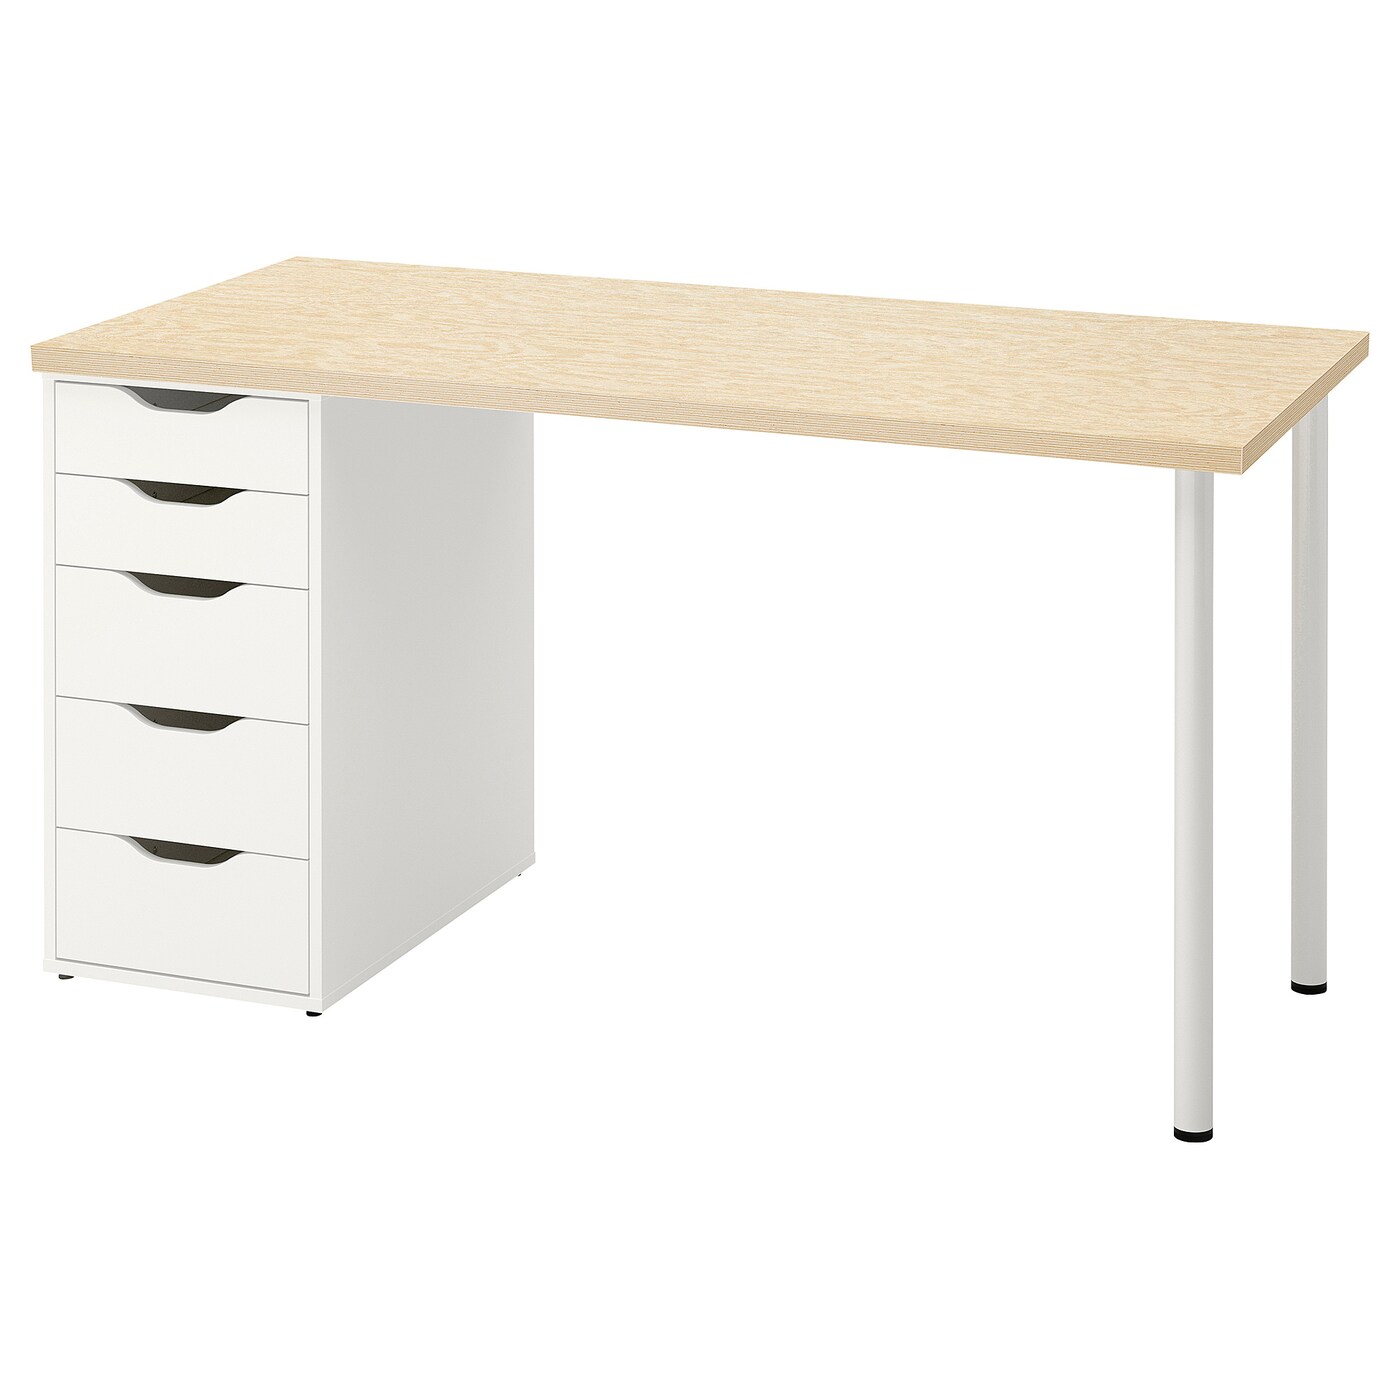 Письменный стол с ящиком - IKEA MITTCIRKEL/ADILS, 140х60 см, сосна/белый, МИТЦИРКЕЛЬ/АДИЛЬС ИКЕА